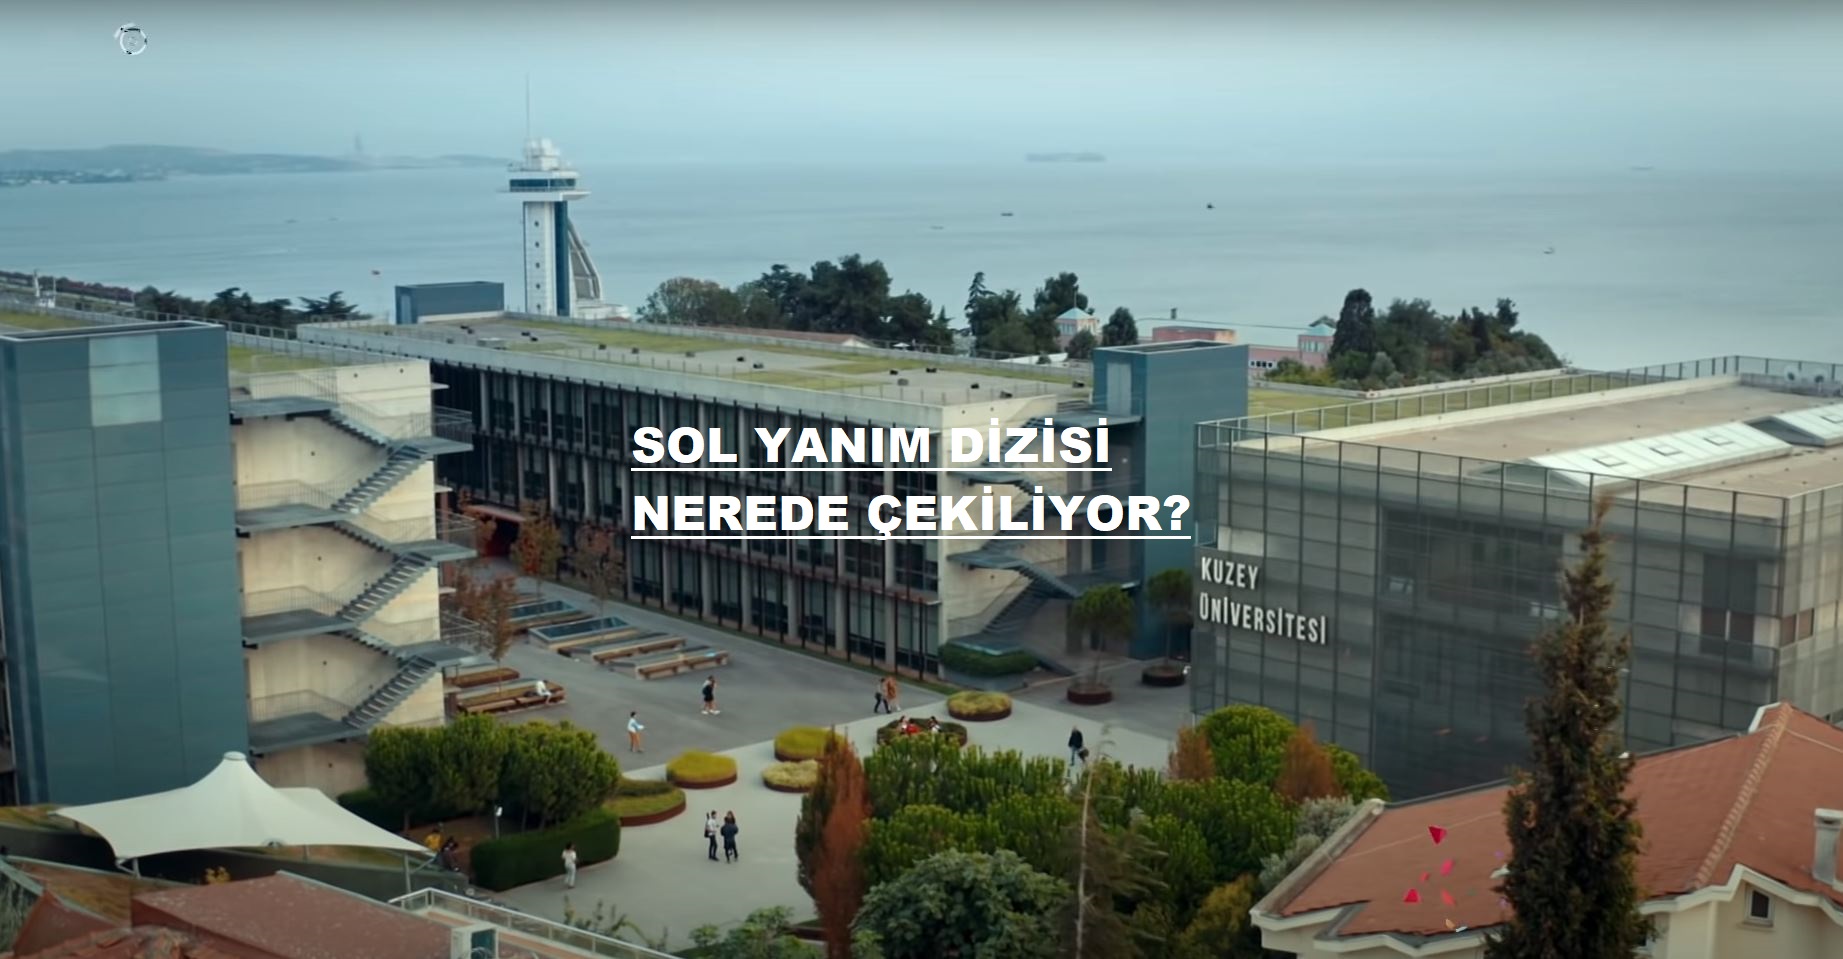 Sol Yanım dizisi nerede çekiliyor? İstanbul Kuzey Üniversitesi nerede? Fox TV Sol Yanım dizisi hangi okulda, üniversitede çekildi?